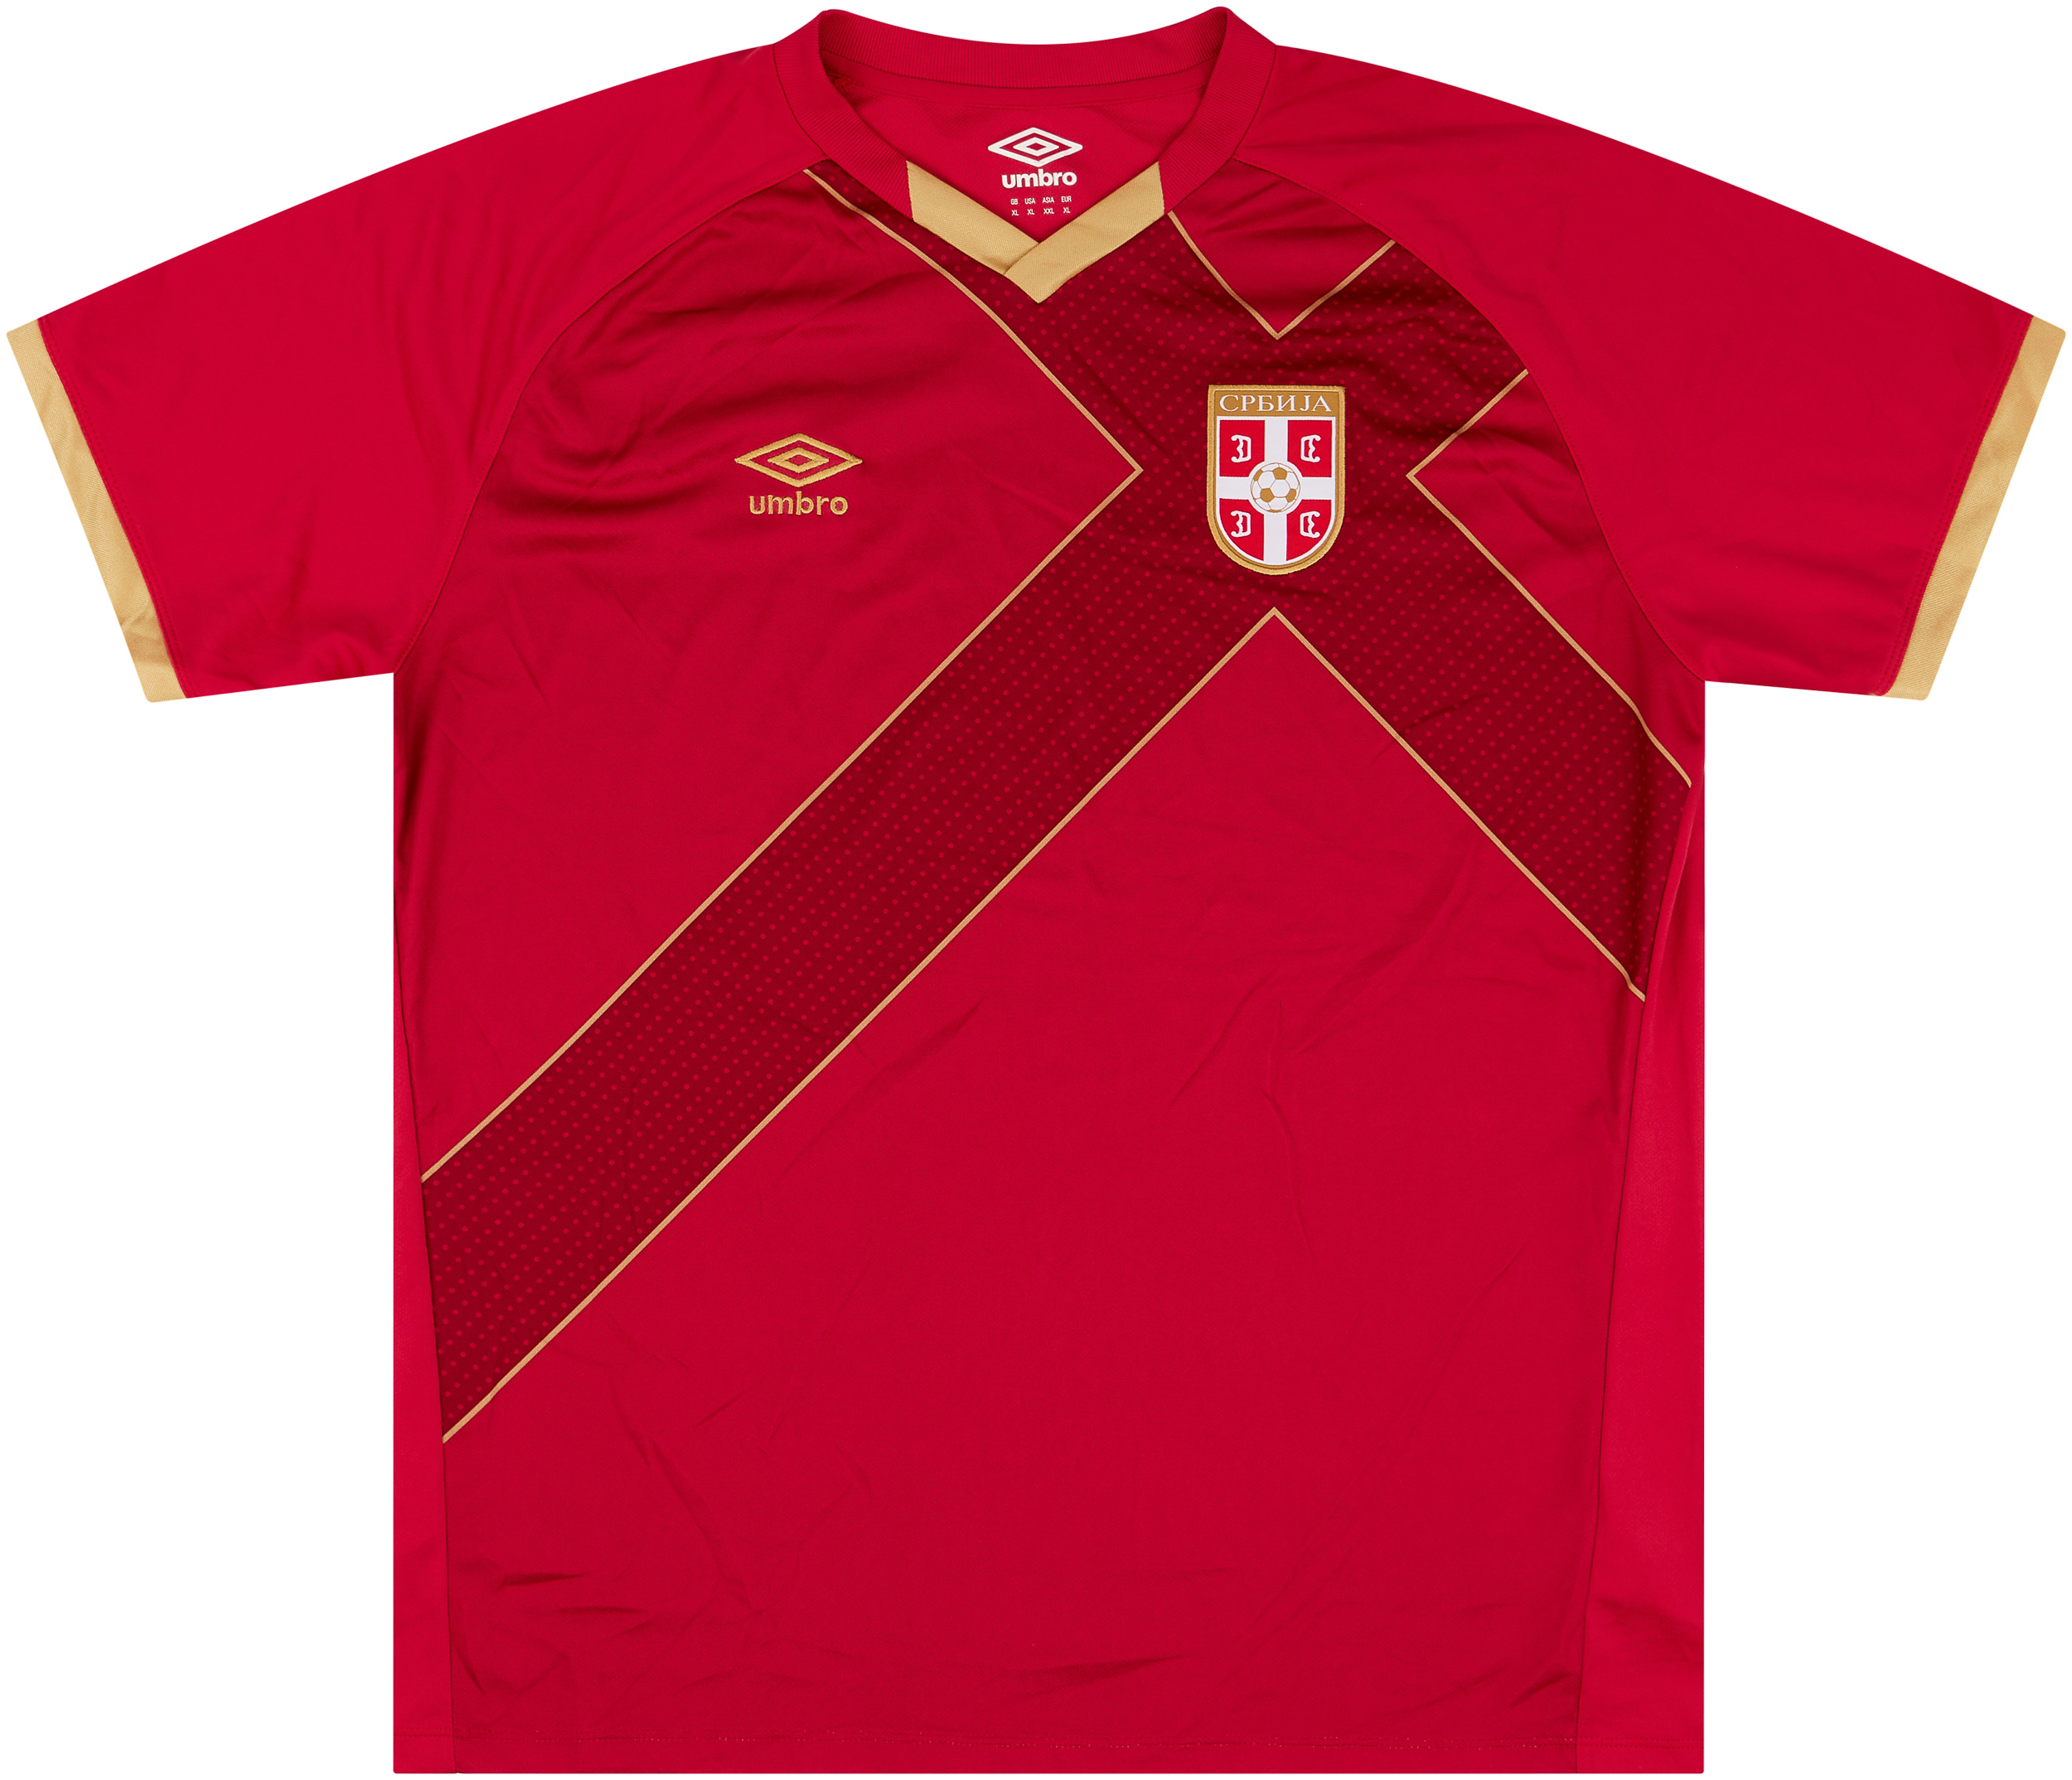 2014-15 Serbia Home Shirt - 9/10 - ()